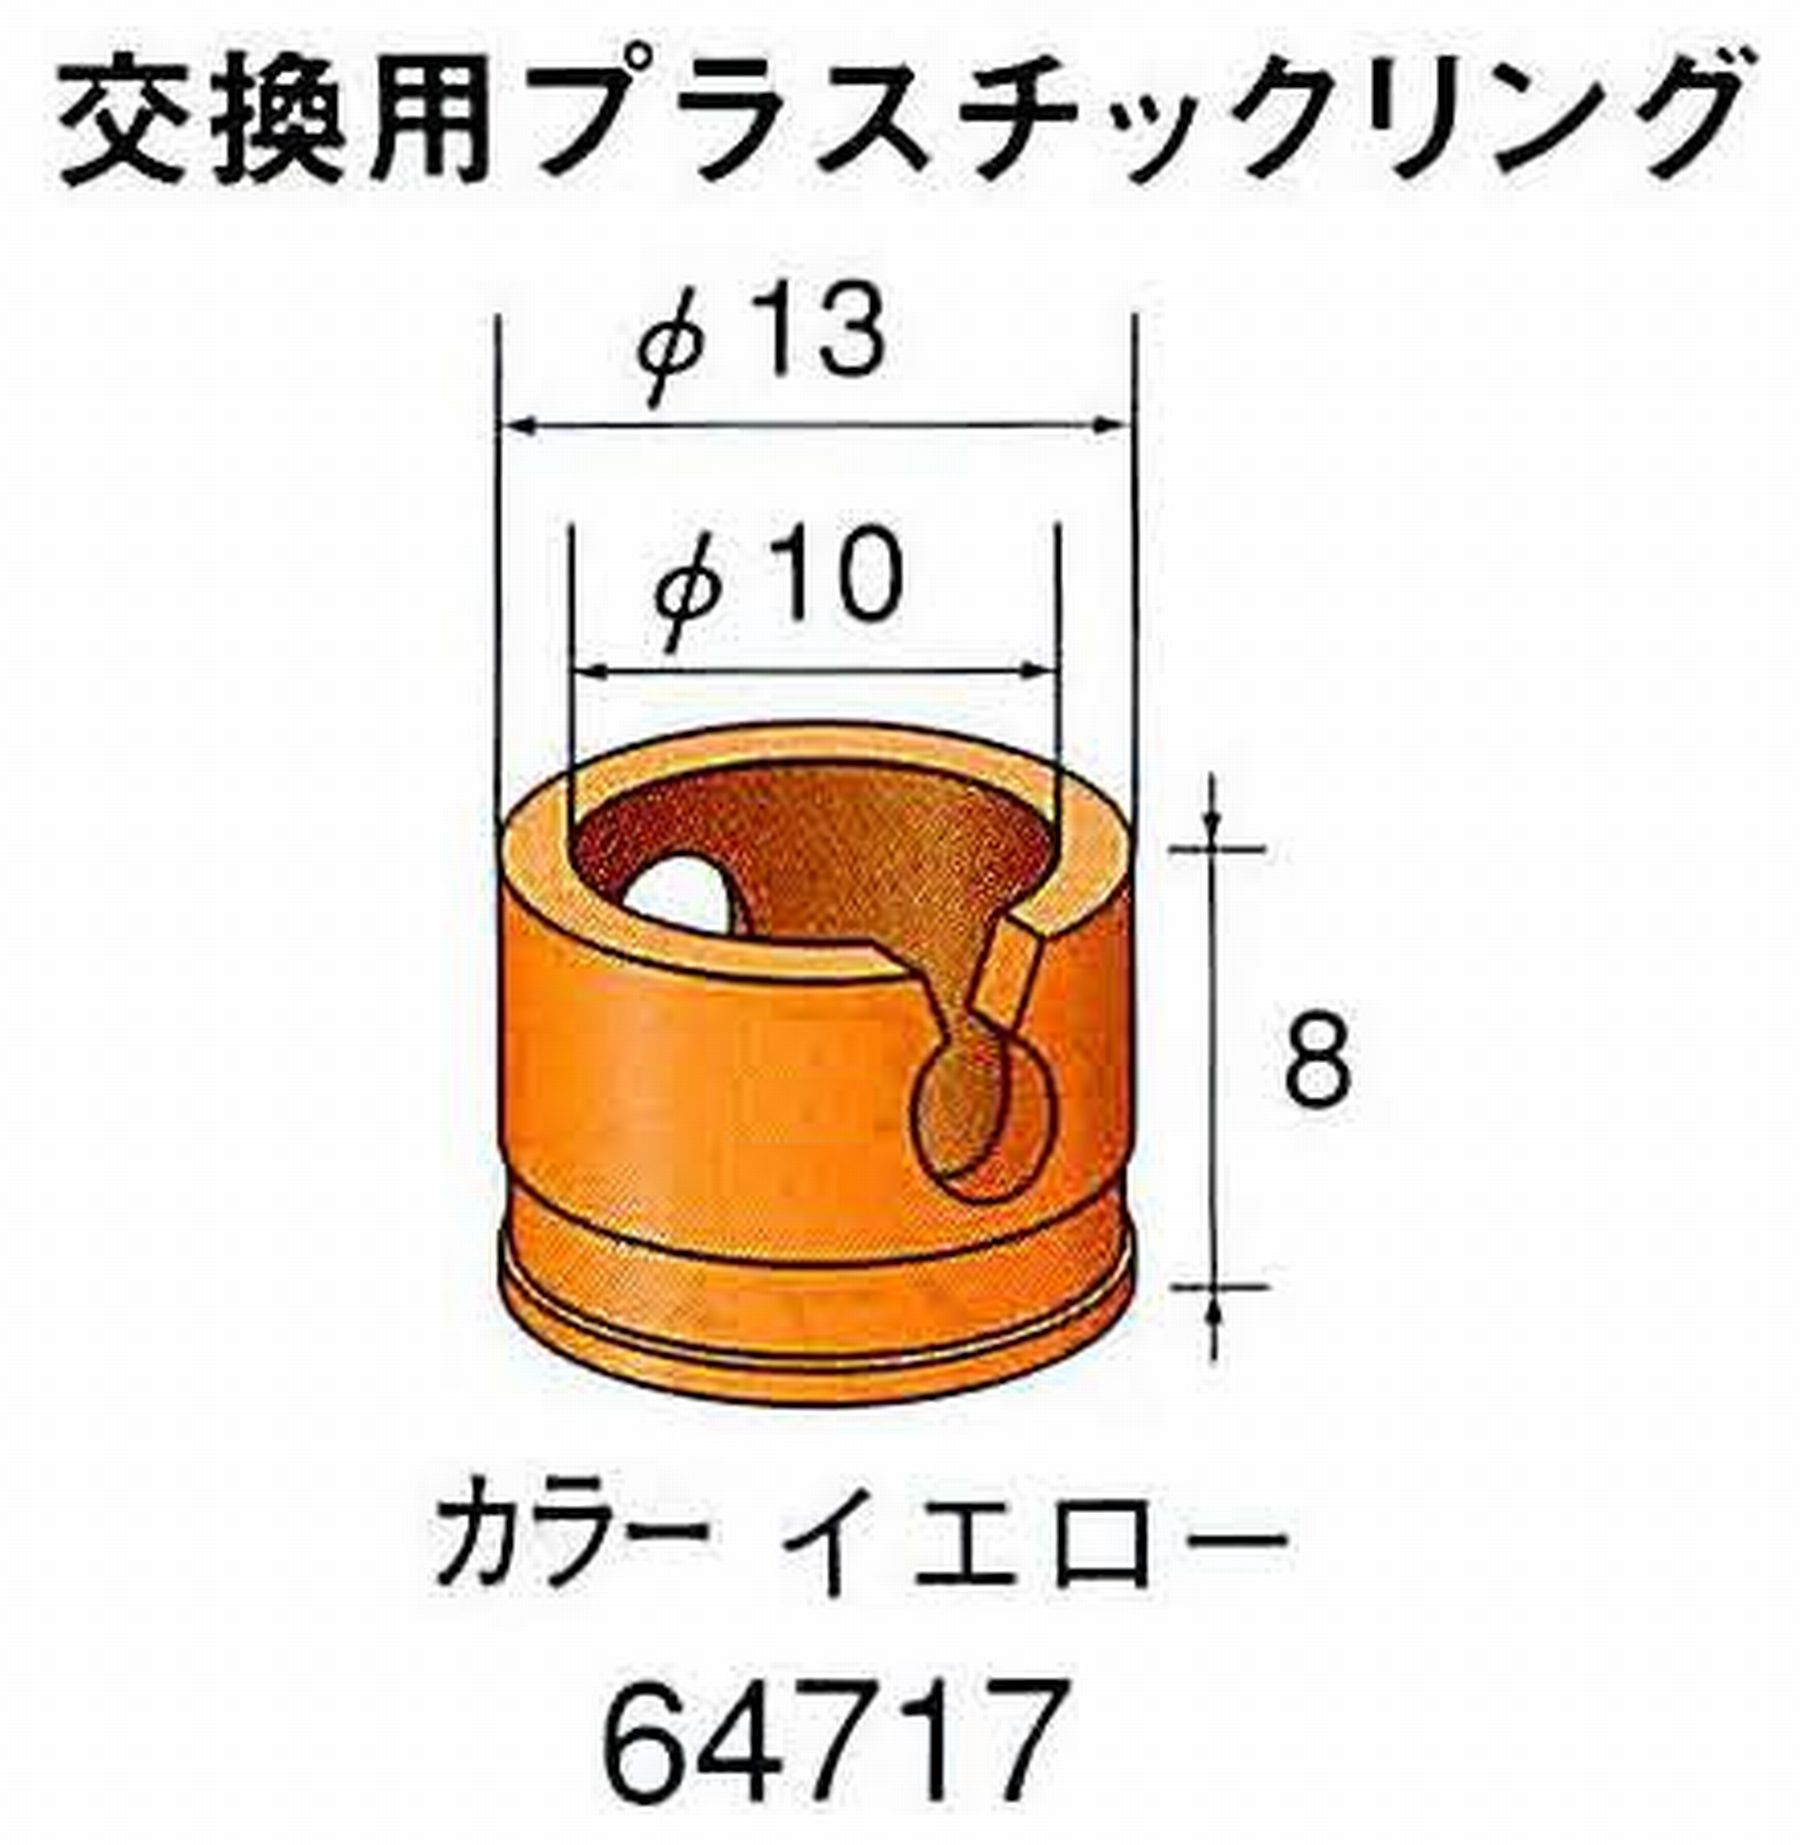 ナカニシ/NAKANISHI アングルグラインダ(電動・エアー) アングルアタッチメント専用工具 ラップリング(交換用プラスチックリング) 64717